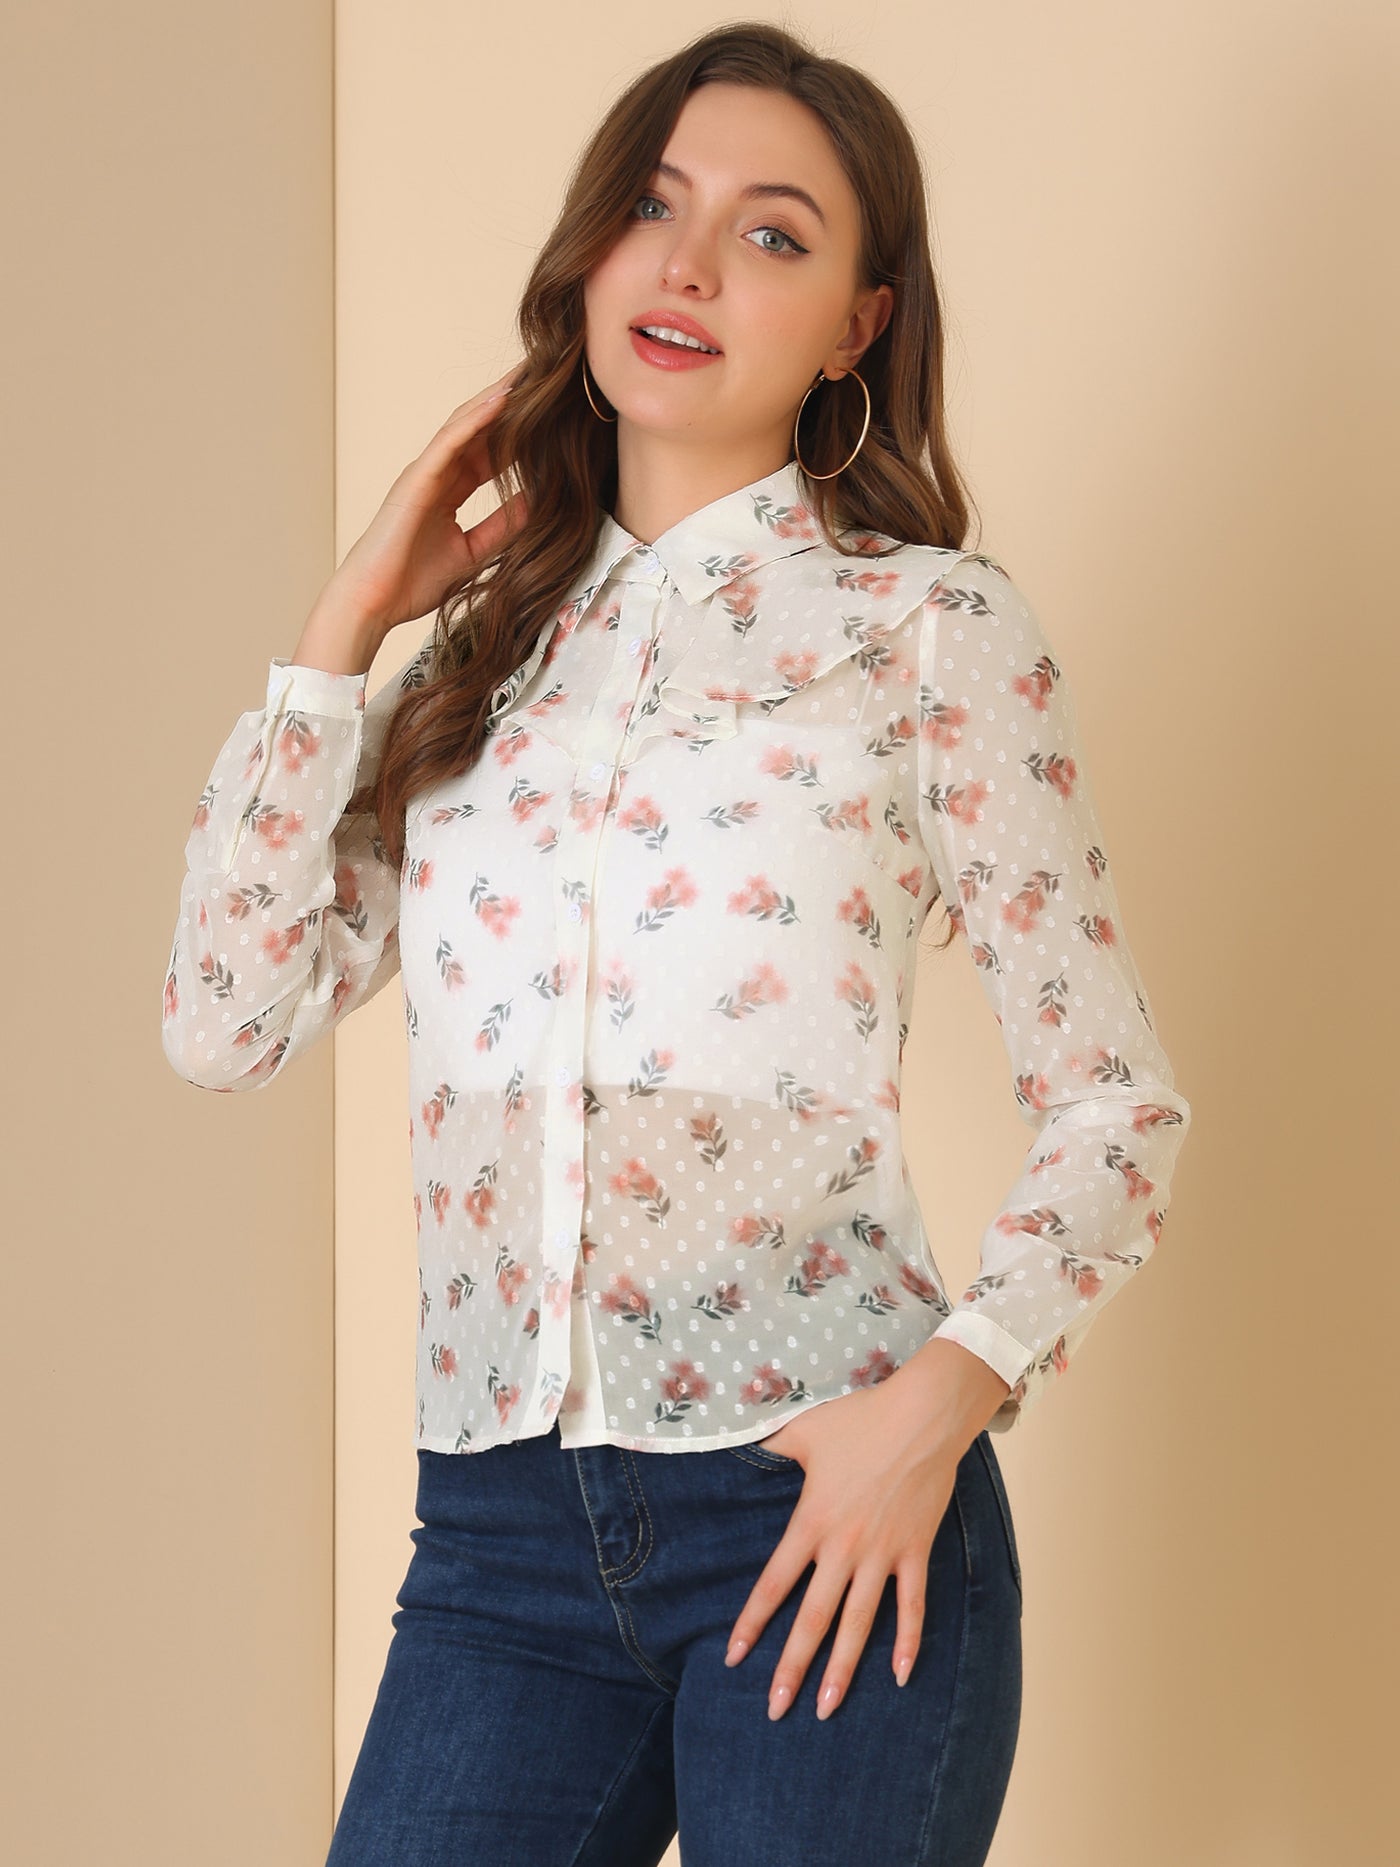 Allegra K Swiss Dots Floral Shirt Ruffle Neck Long Sleeve Sheer Blouse Top